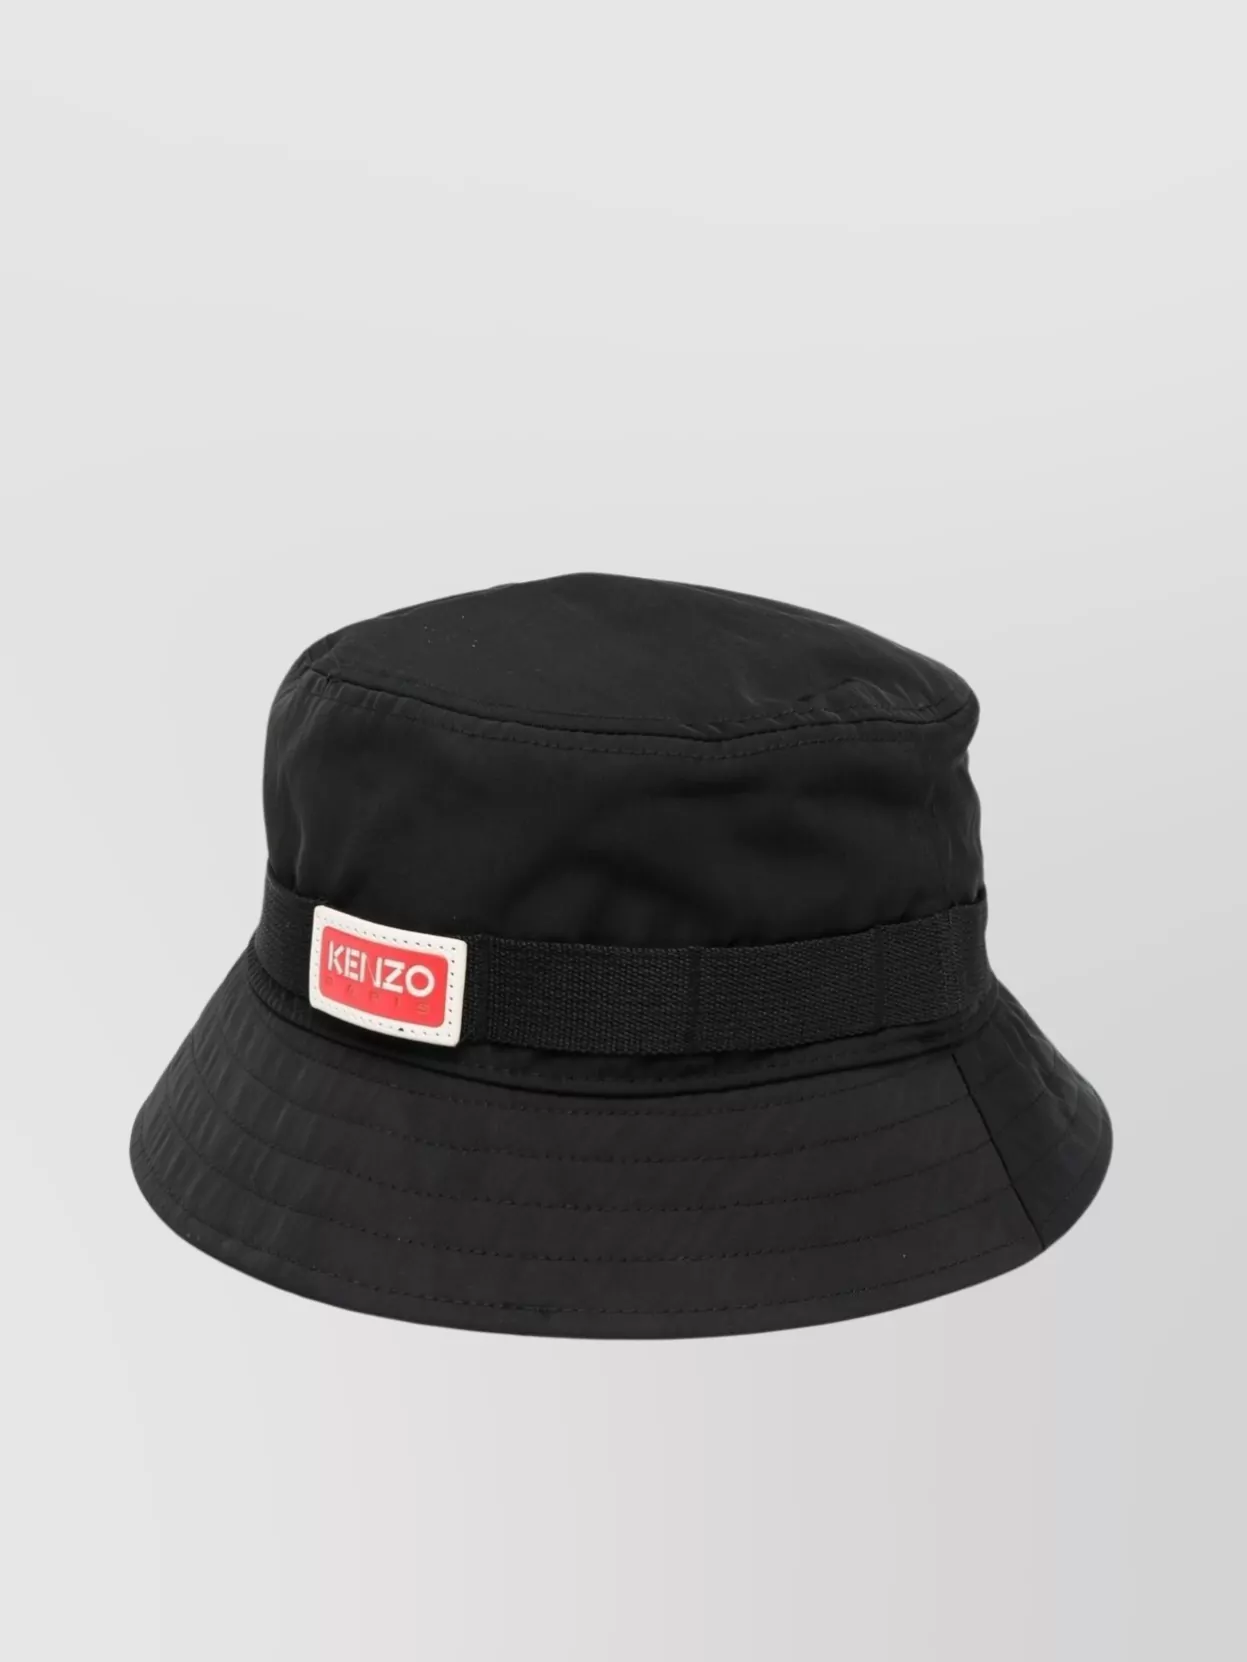 Kenzo Black Bucket Hat